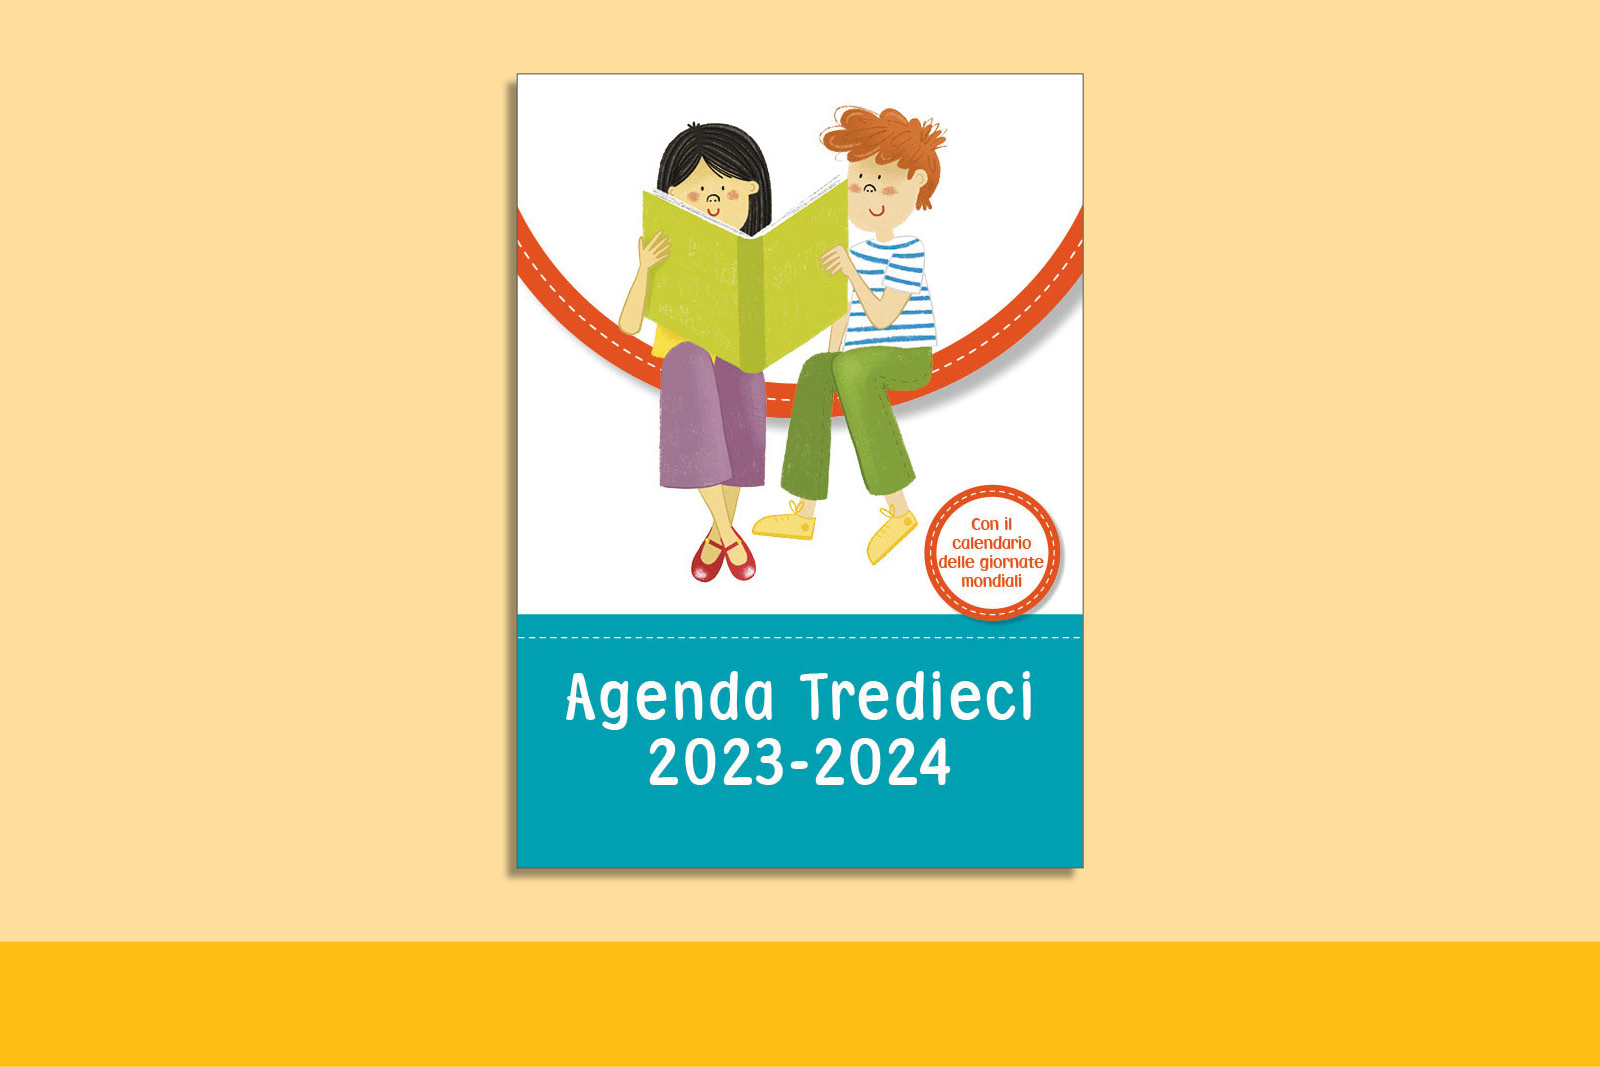 Agenda 2023-2024